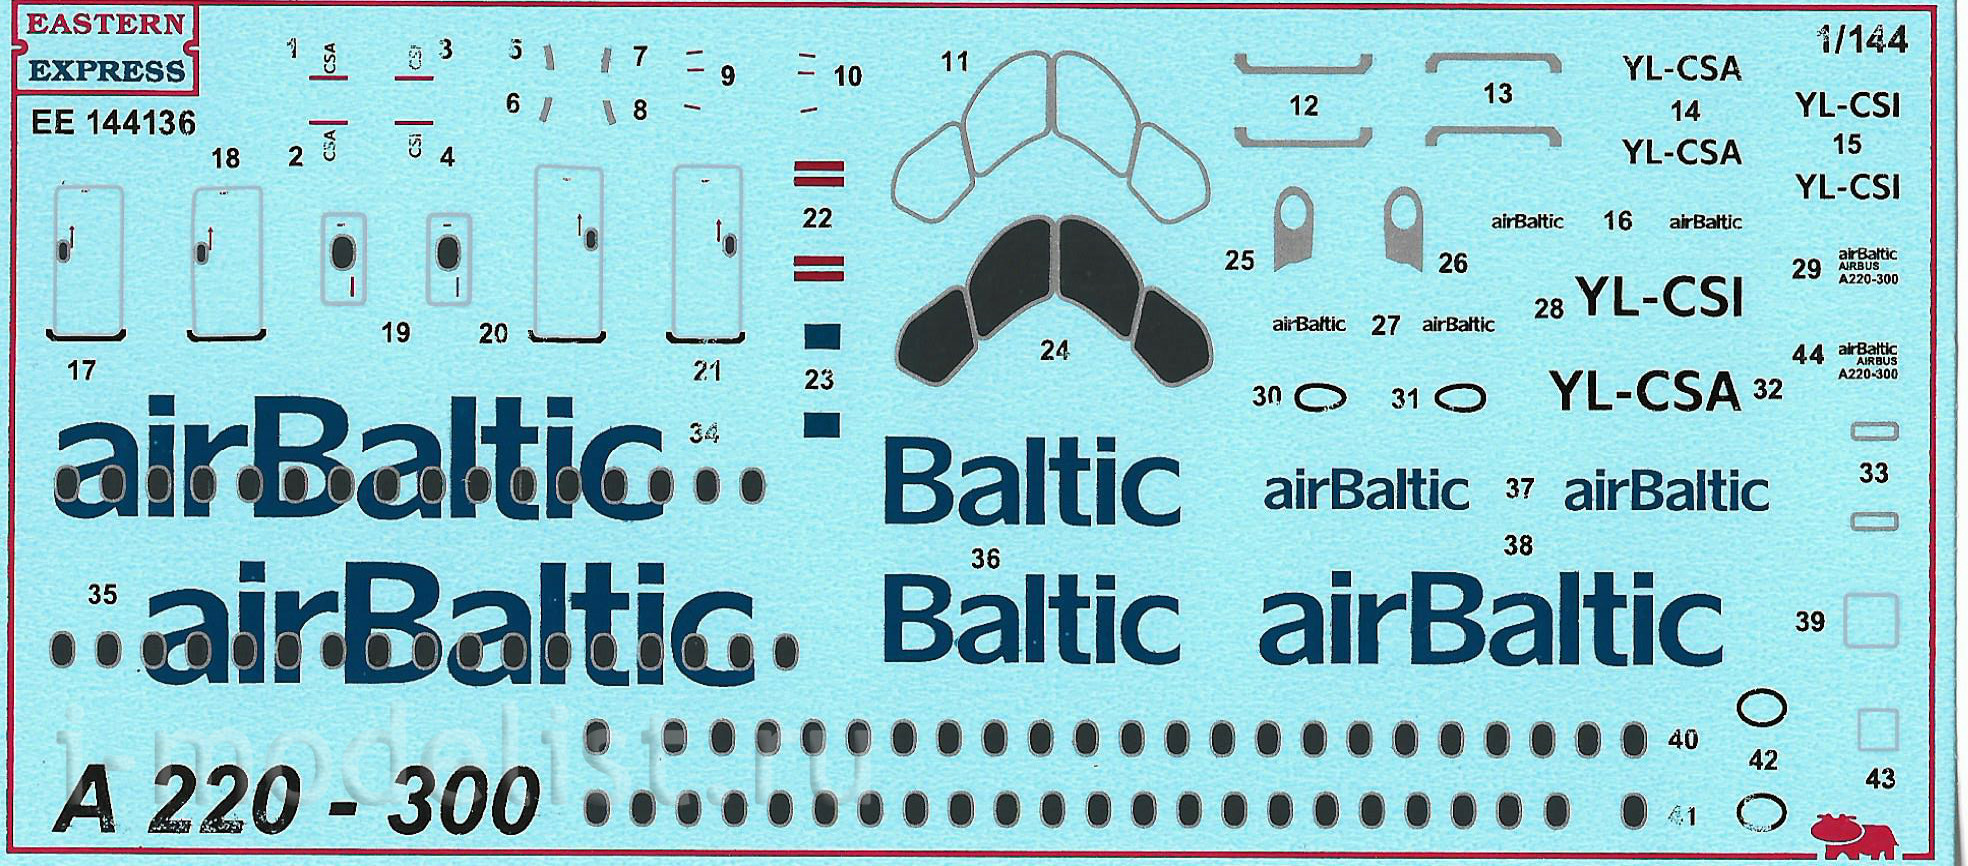 144136 Восточный экспресс 1/144 Авиалайнер A220-300 Air Baltic